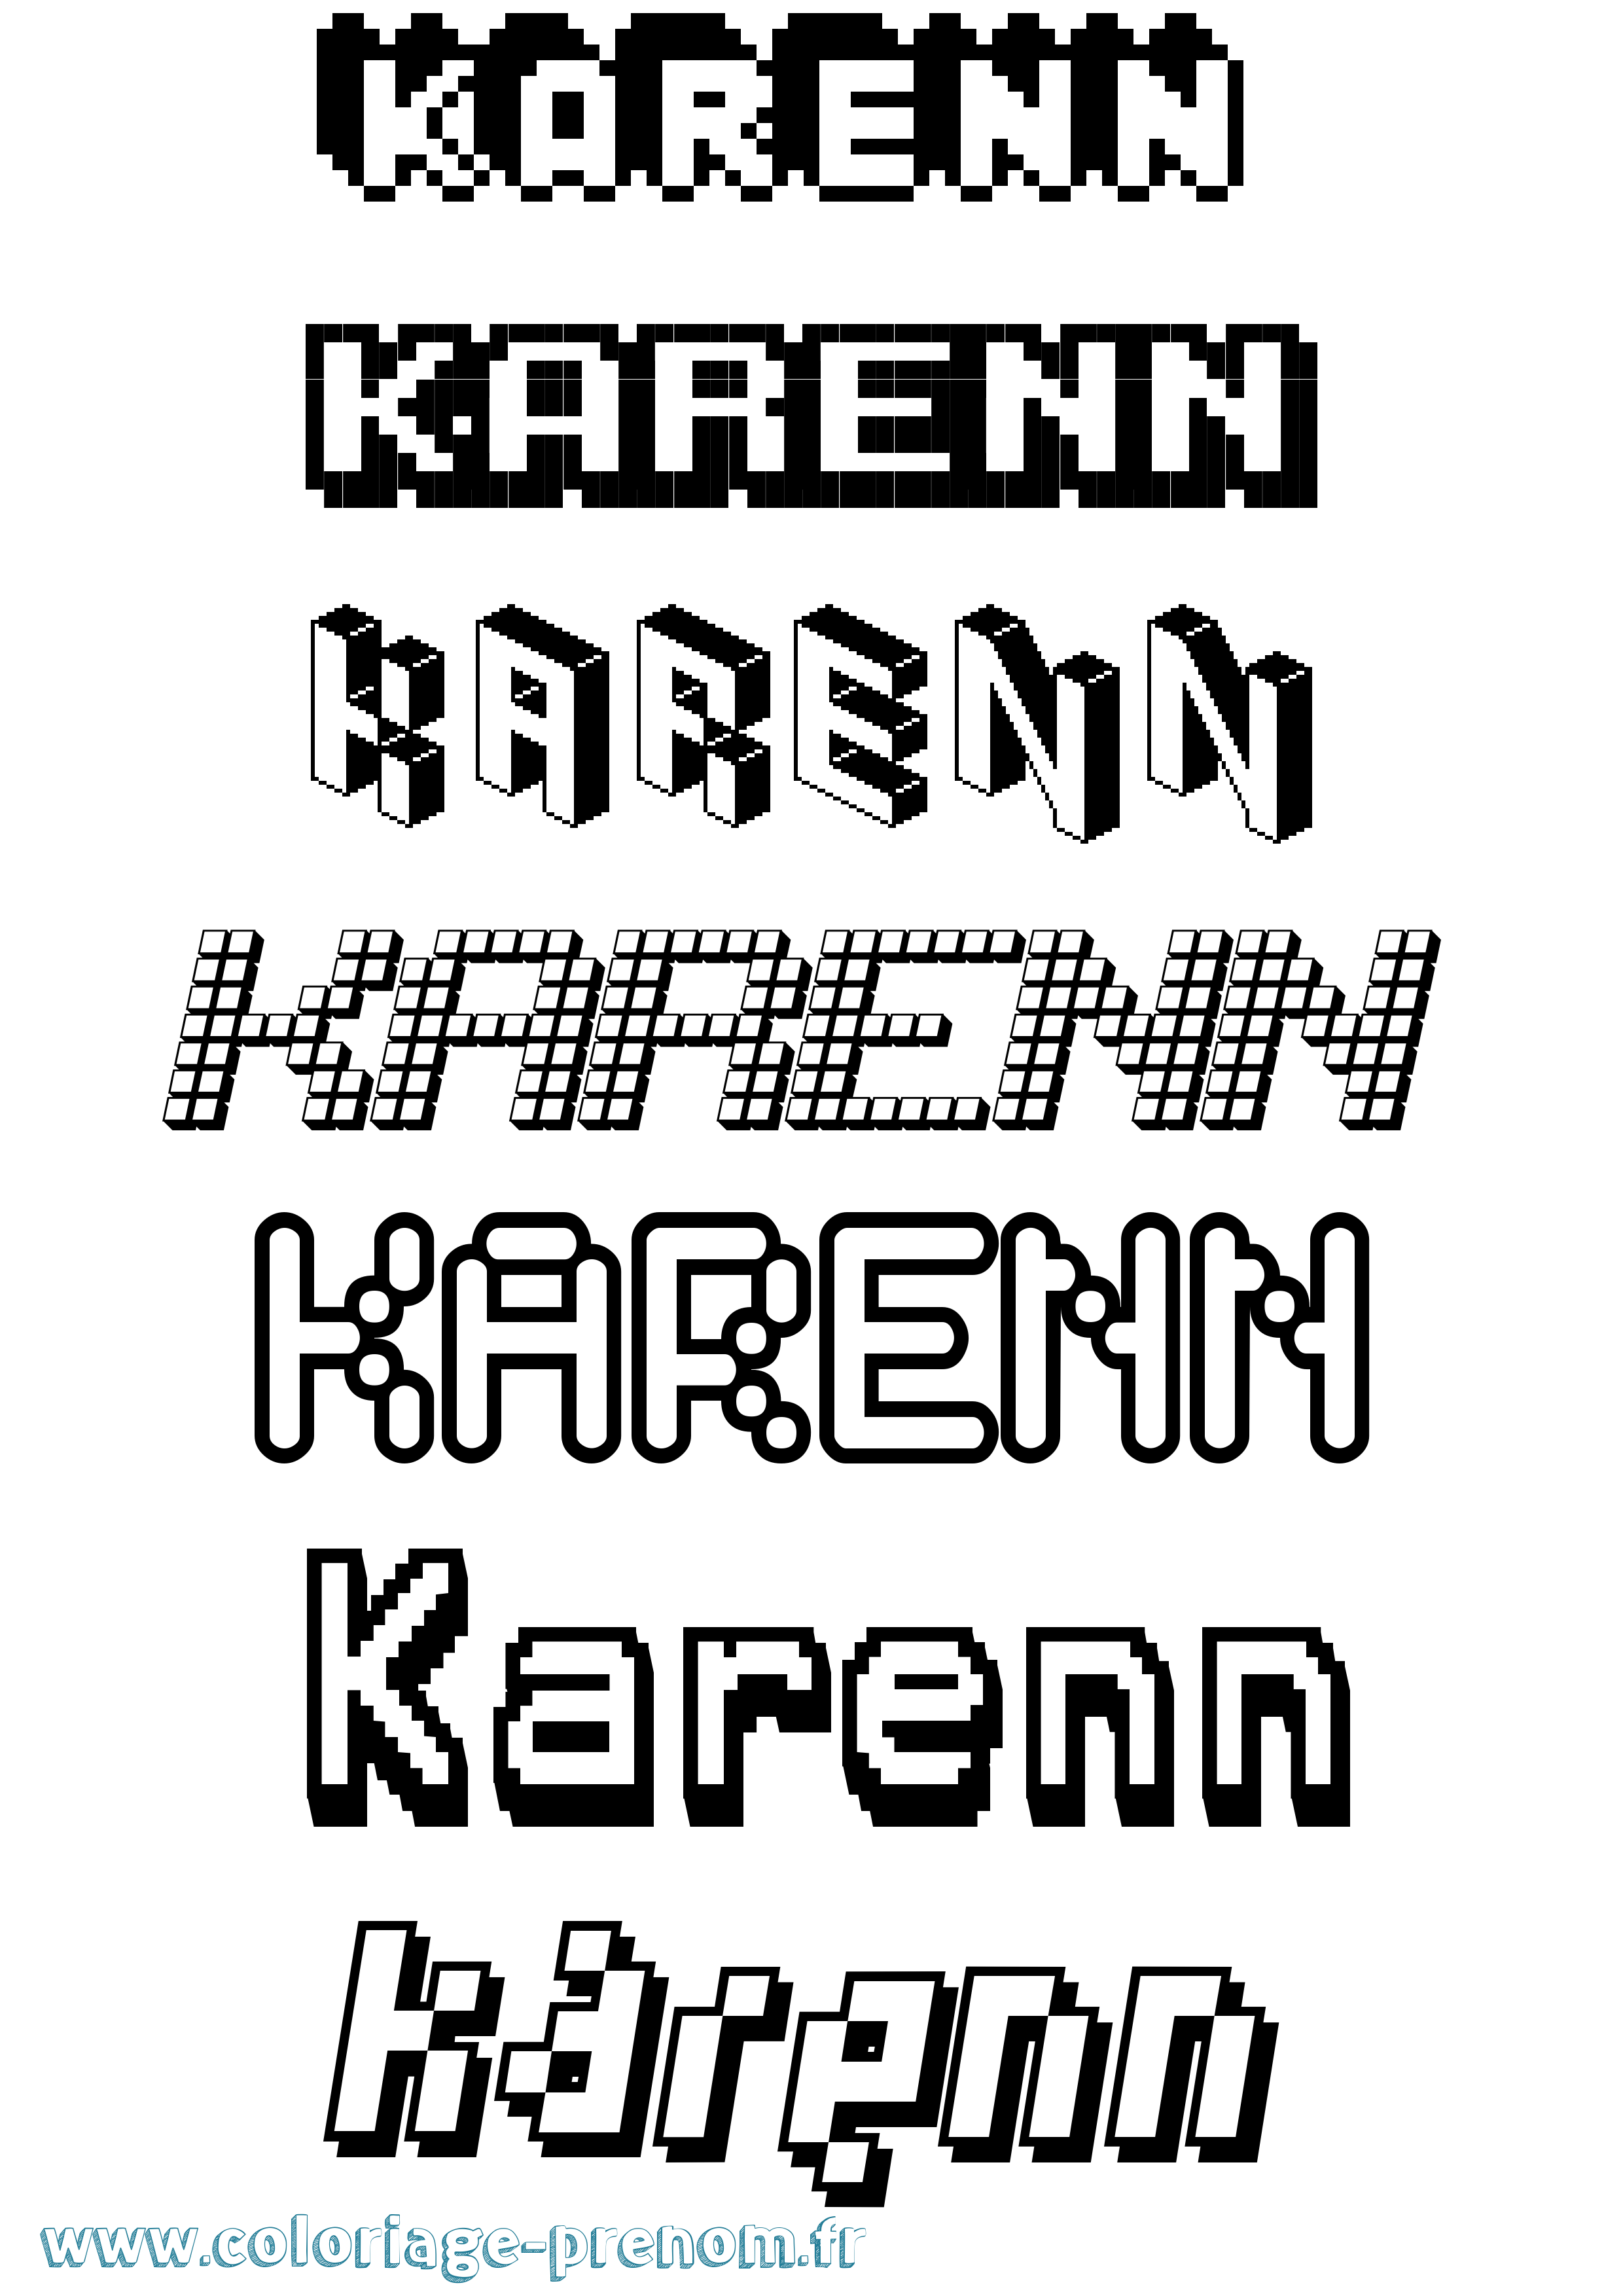 Coloriage prénom Karenn Pixel